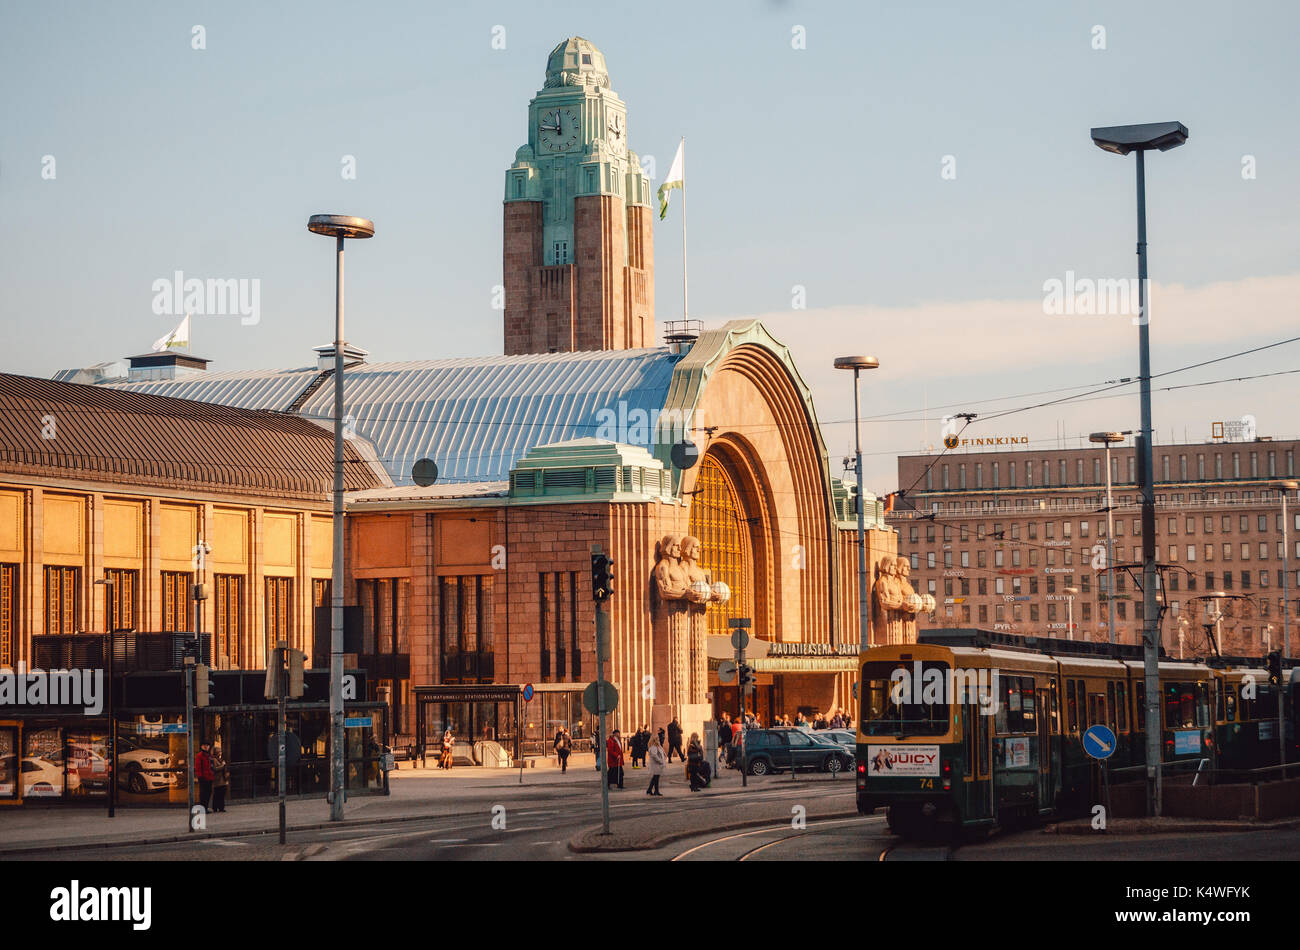 Helsinki, Finlandia - Marzo 17, 2015: el tranvía está delante de la estación de ferrocarril de Helsinki, Finlandia en el amanecer. Foto de stock